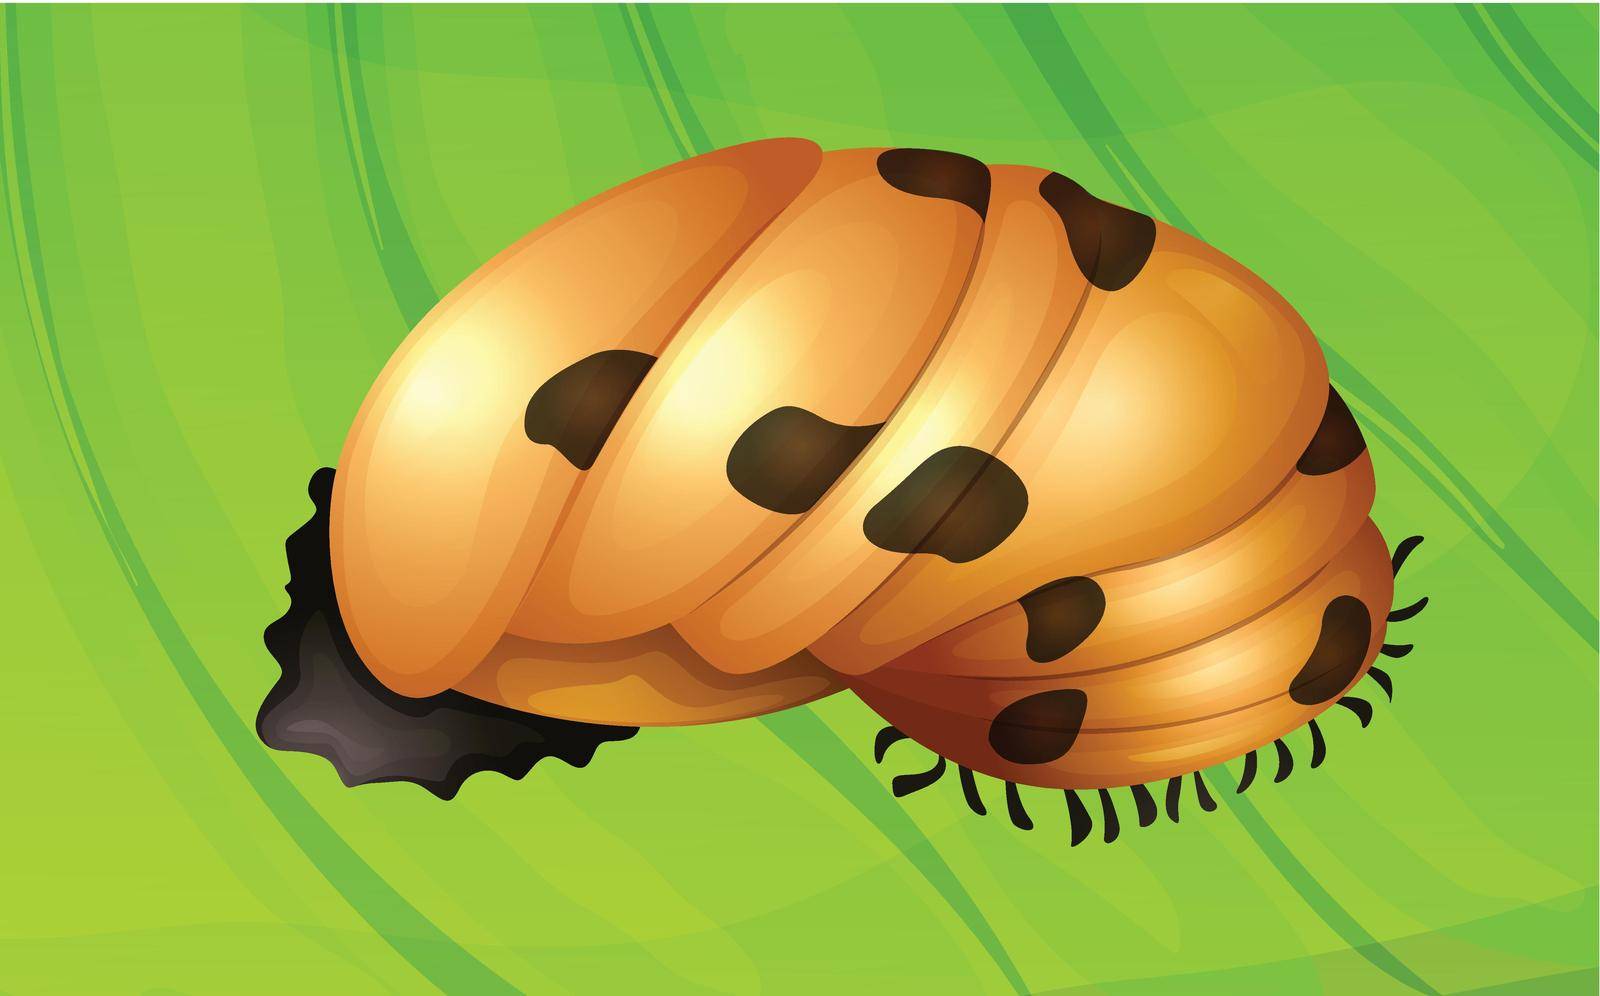 Ladybug life cycle by iimages